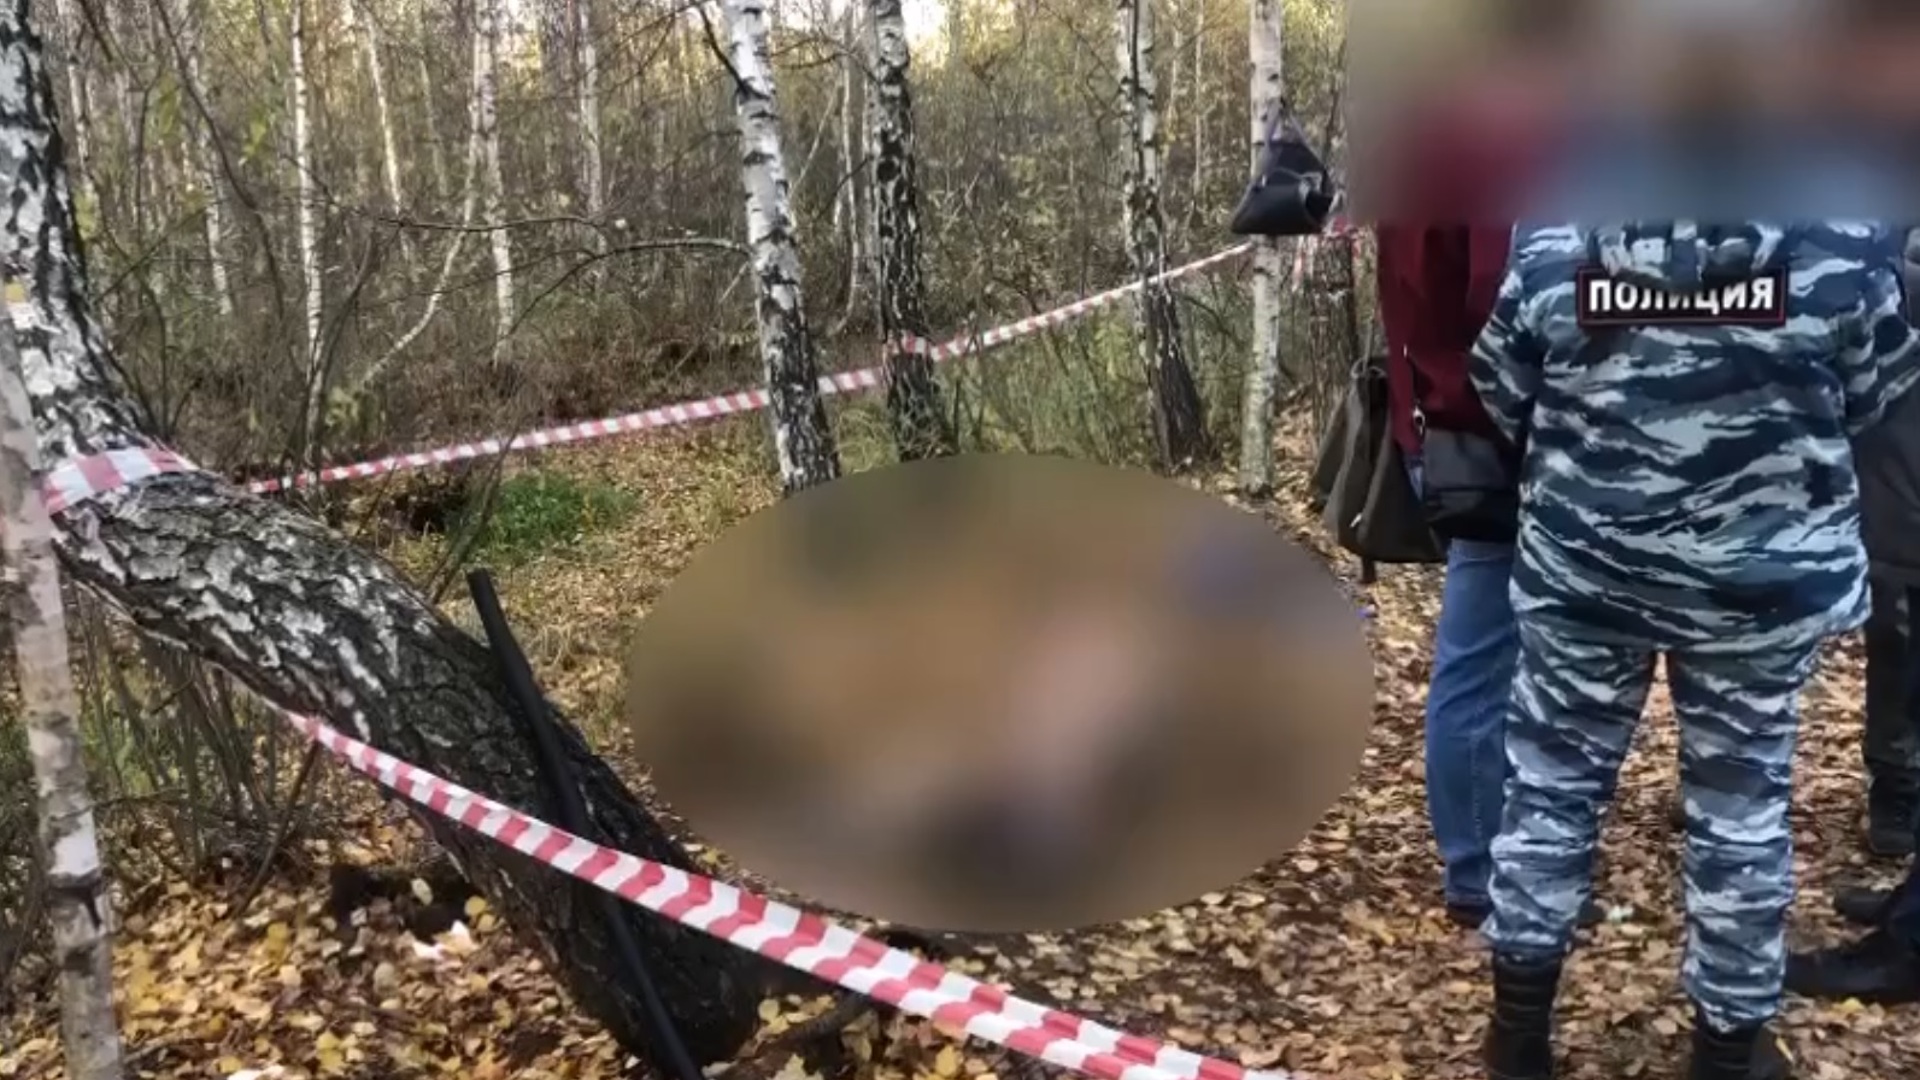 Убили подельника. 14 Летнего подростка убили в Москве.